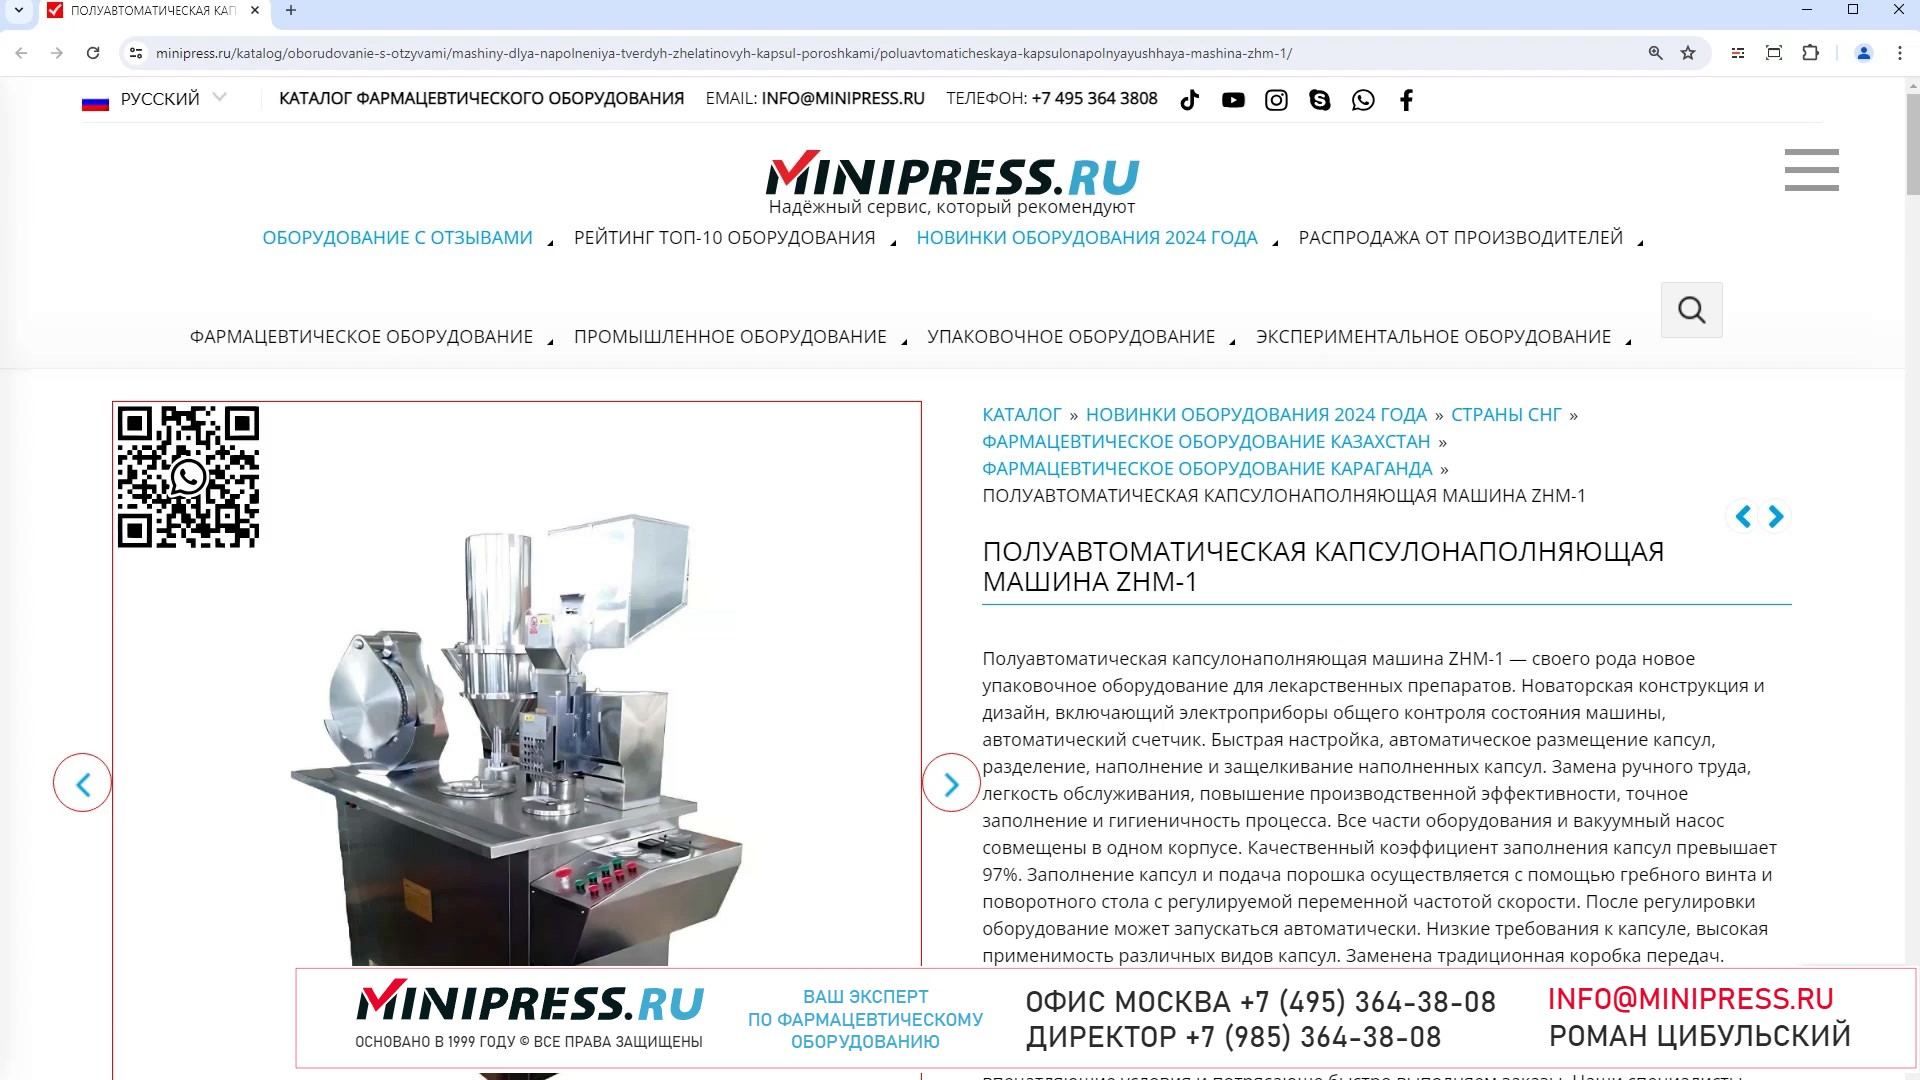 Minipress.ru Полуавтоматическая капсулонаполняющая машина ZHM-1